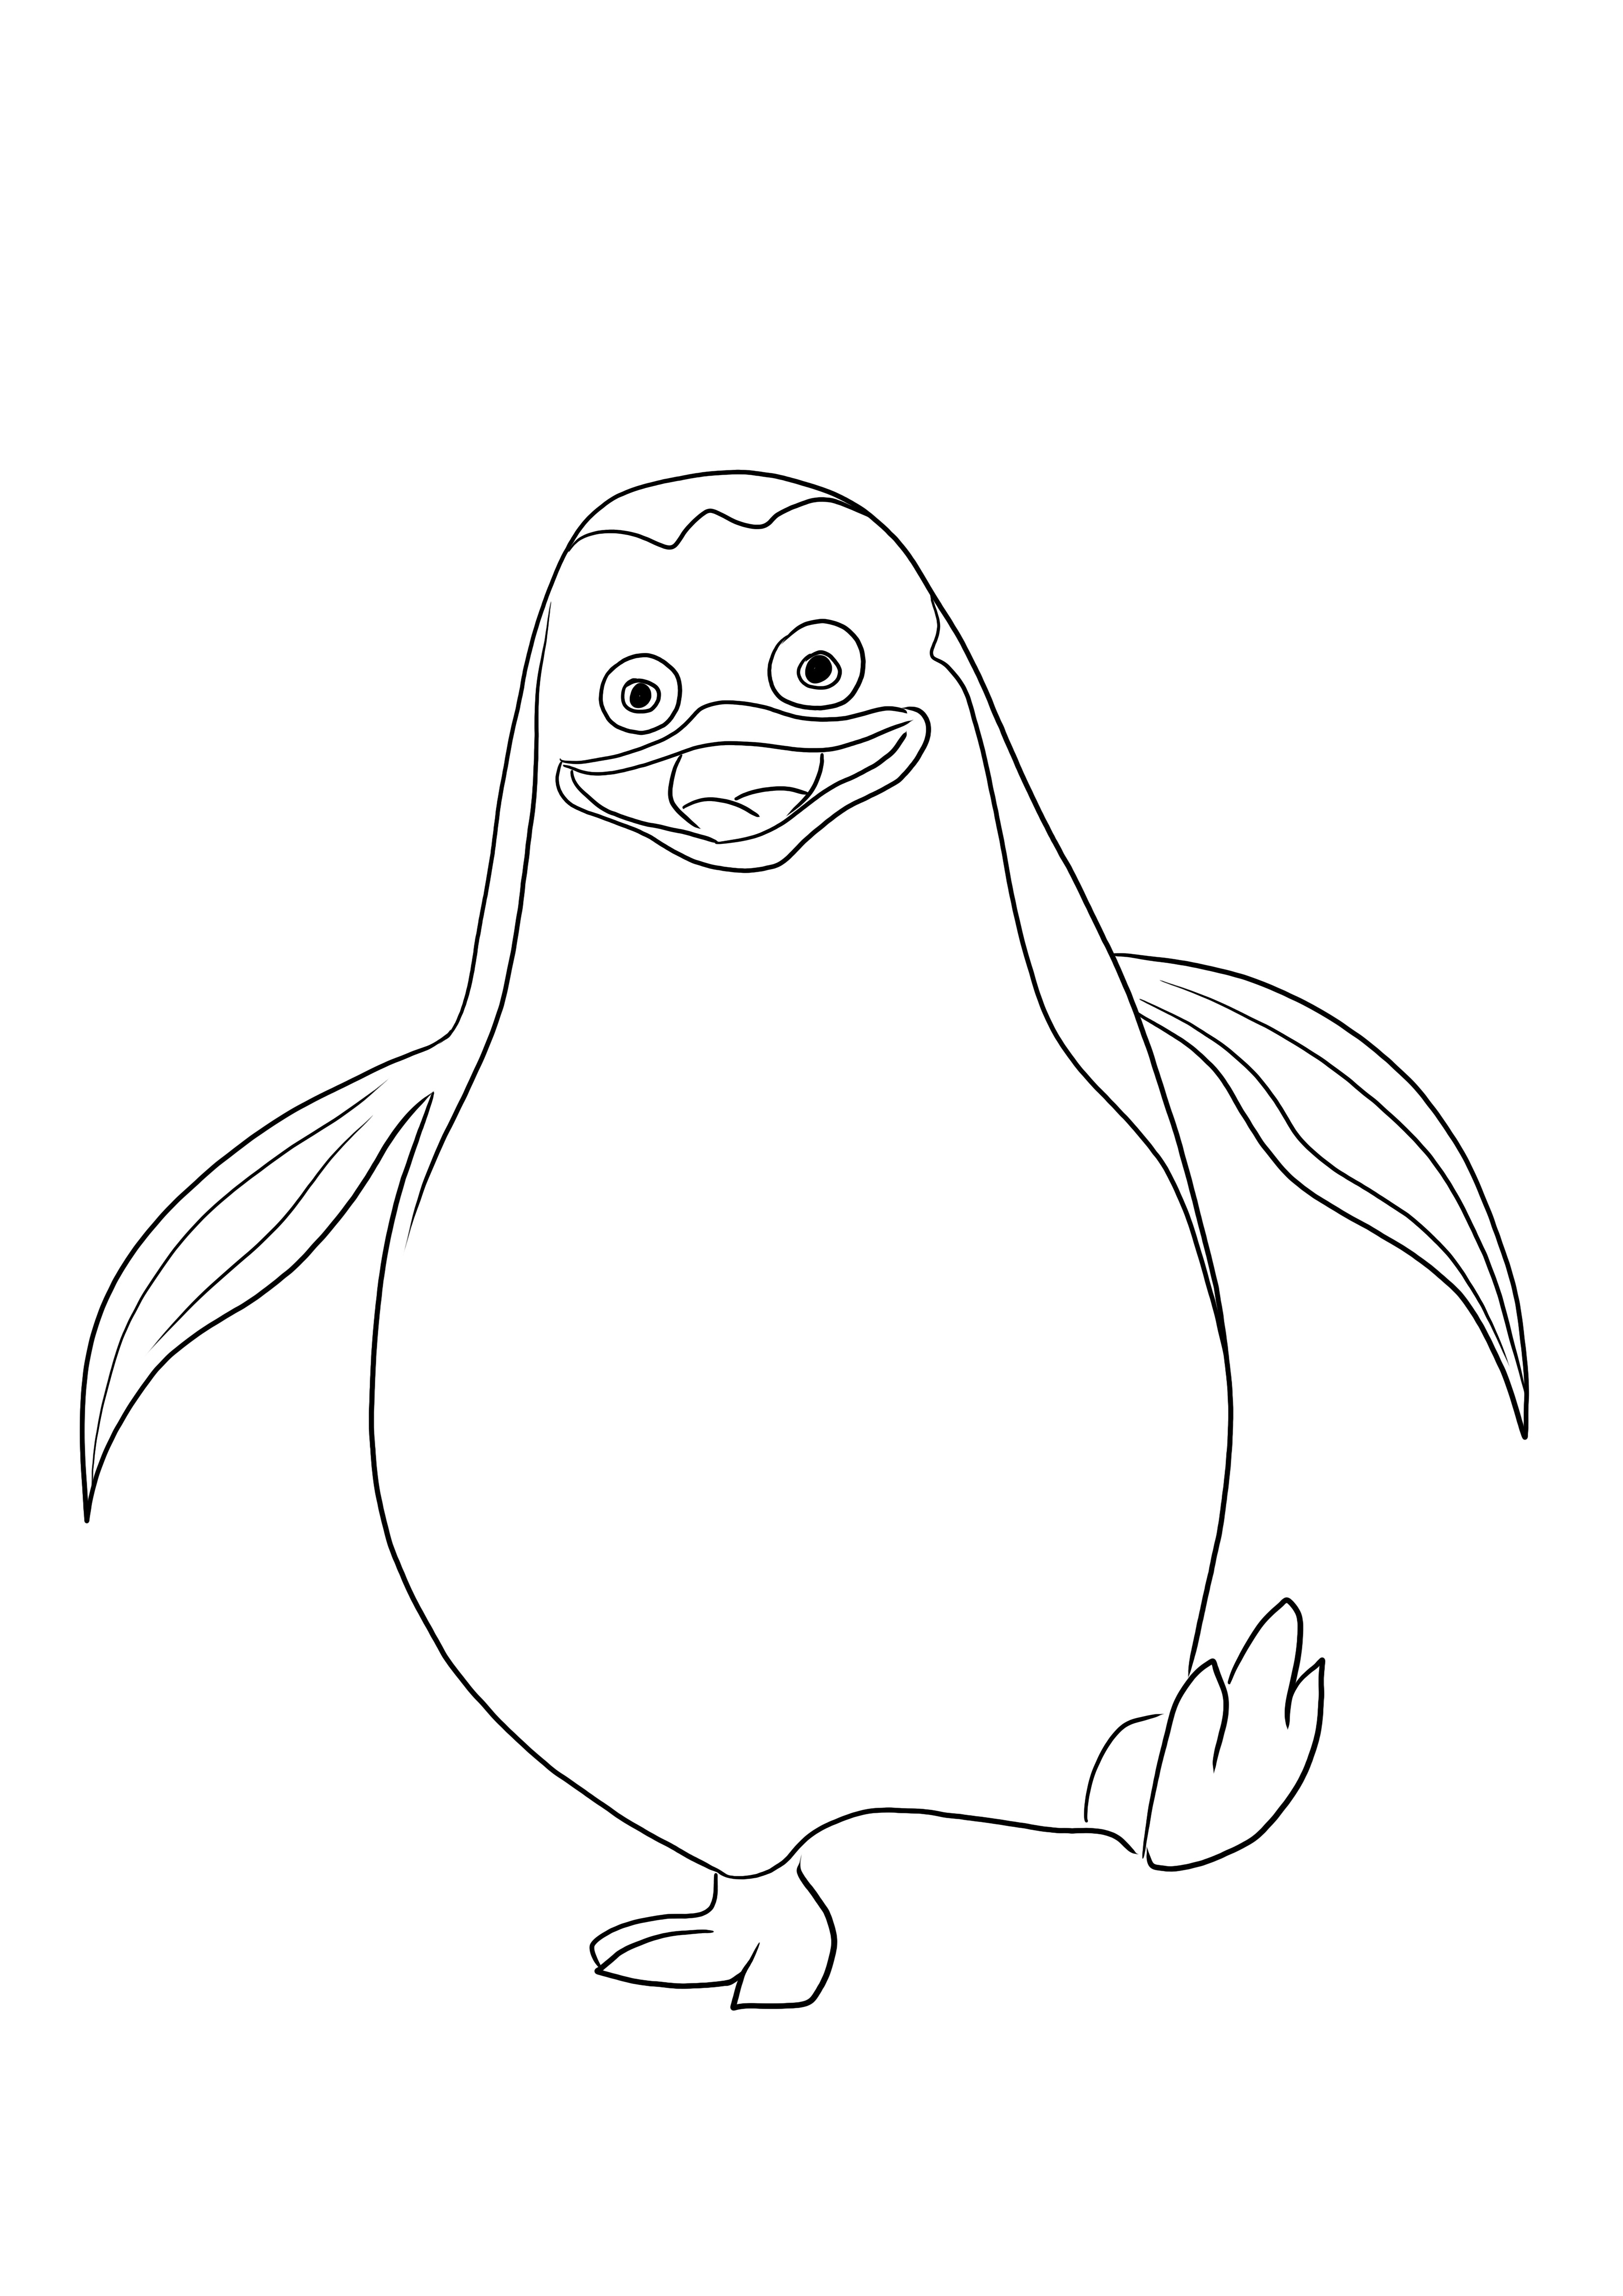 Łatwy do pokolorowania obraz pingwina Szeregowego gotowy do wydrukowania i pokolorowania